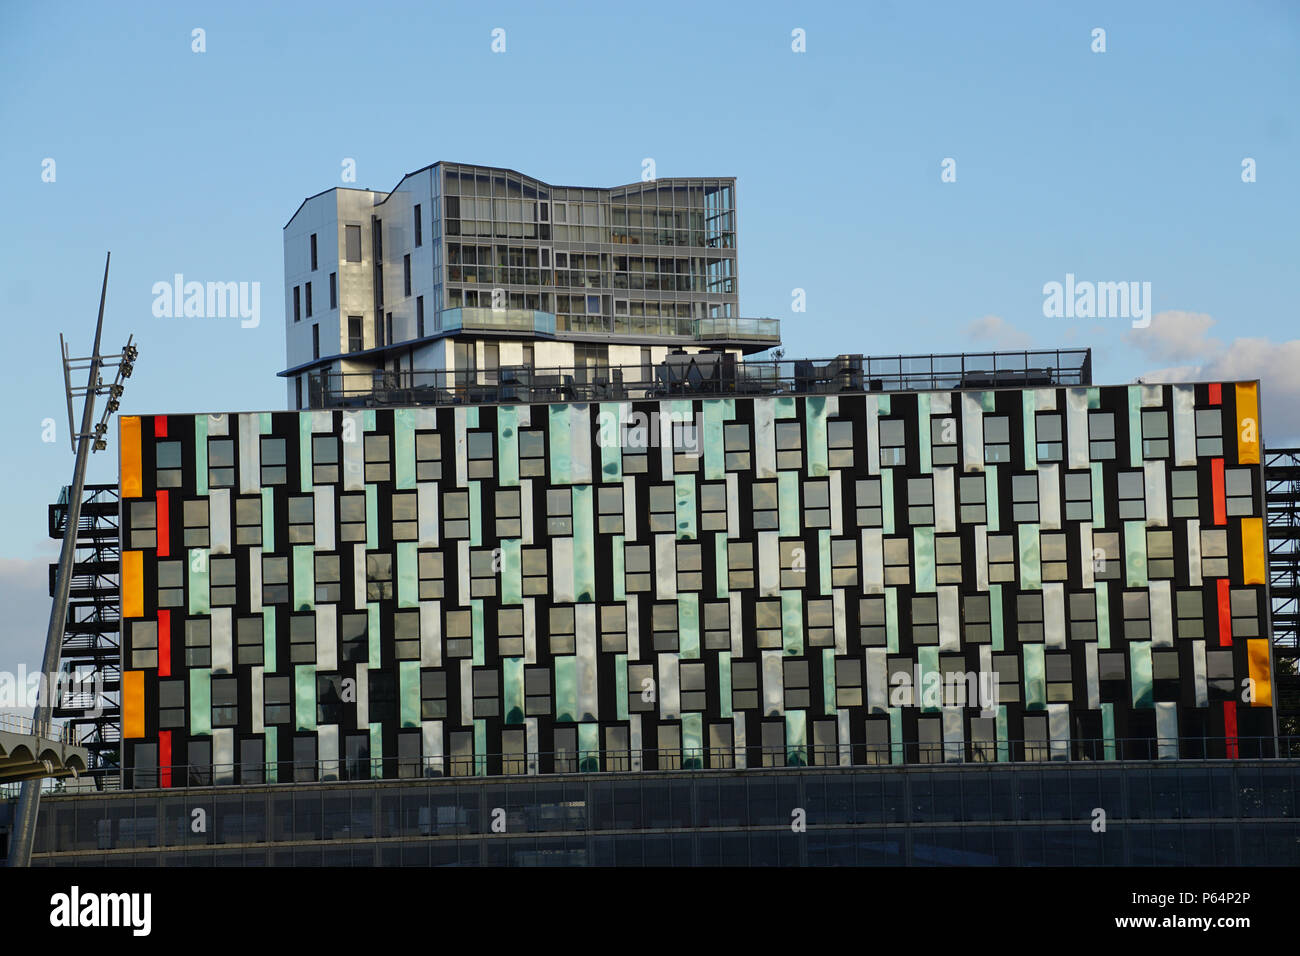 Style très coloré et inhabituelle pour un bâtiment à Nantes, France au crépuscule Banque D'Images